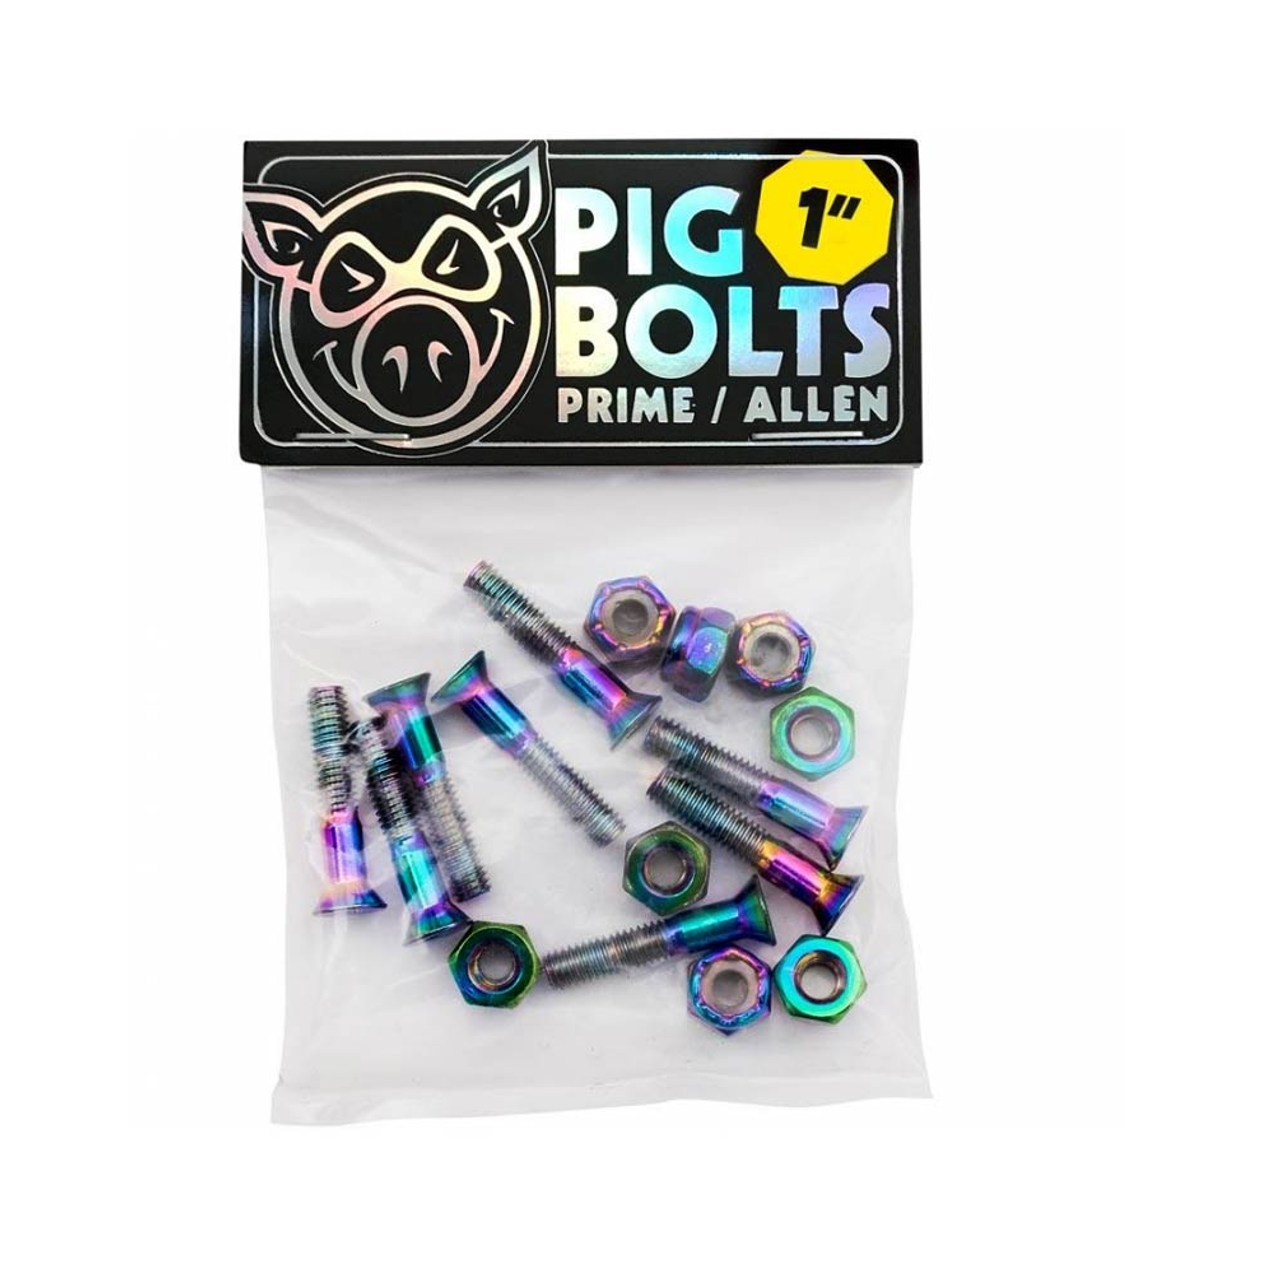 Pig Bolts Hardware Prime 1" Allen